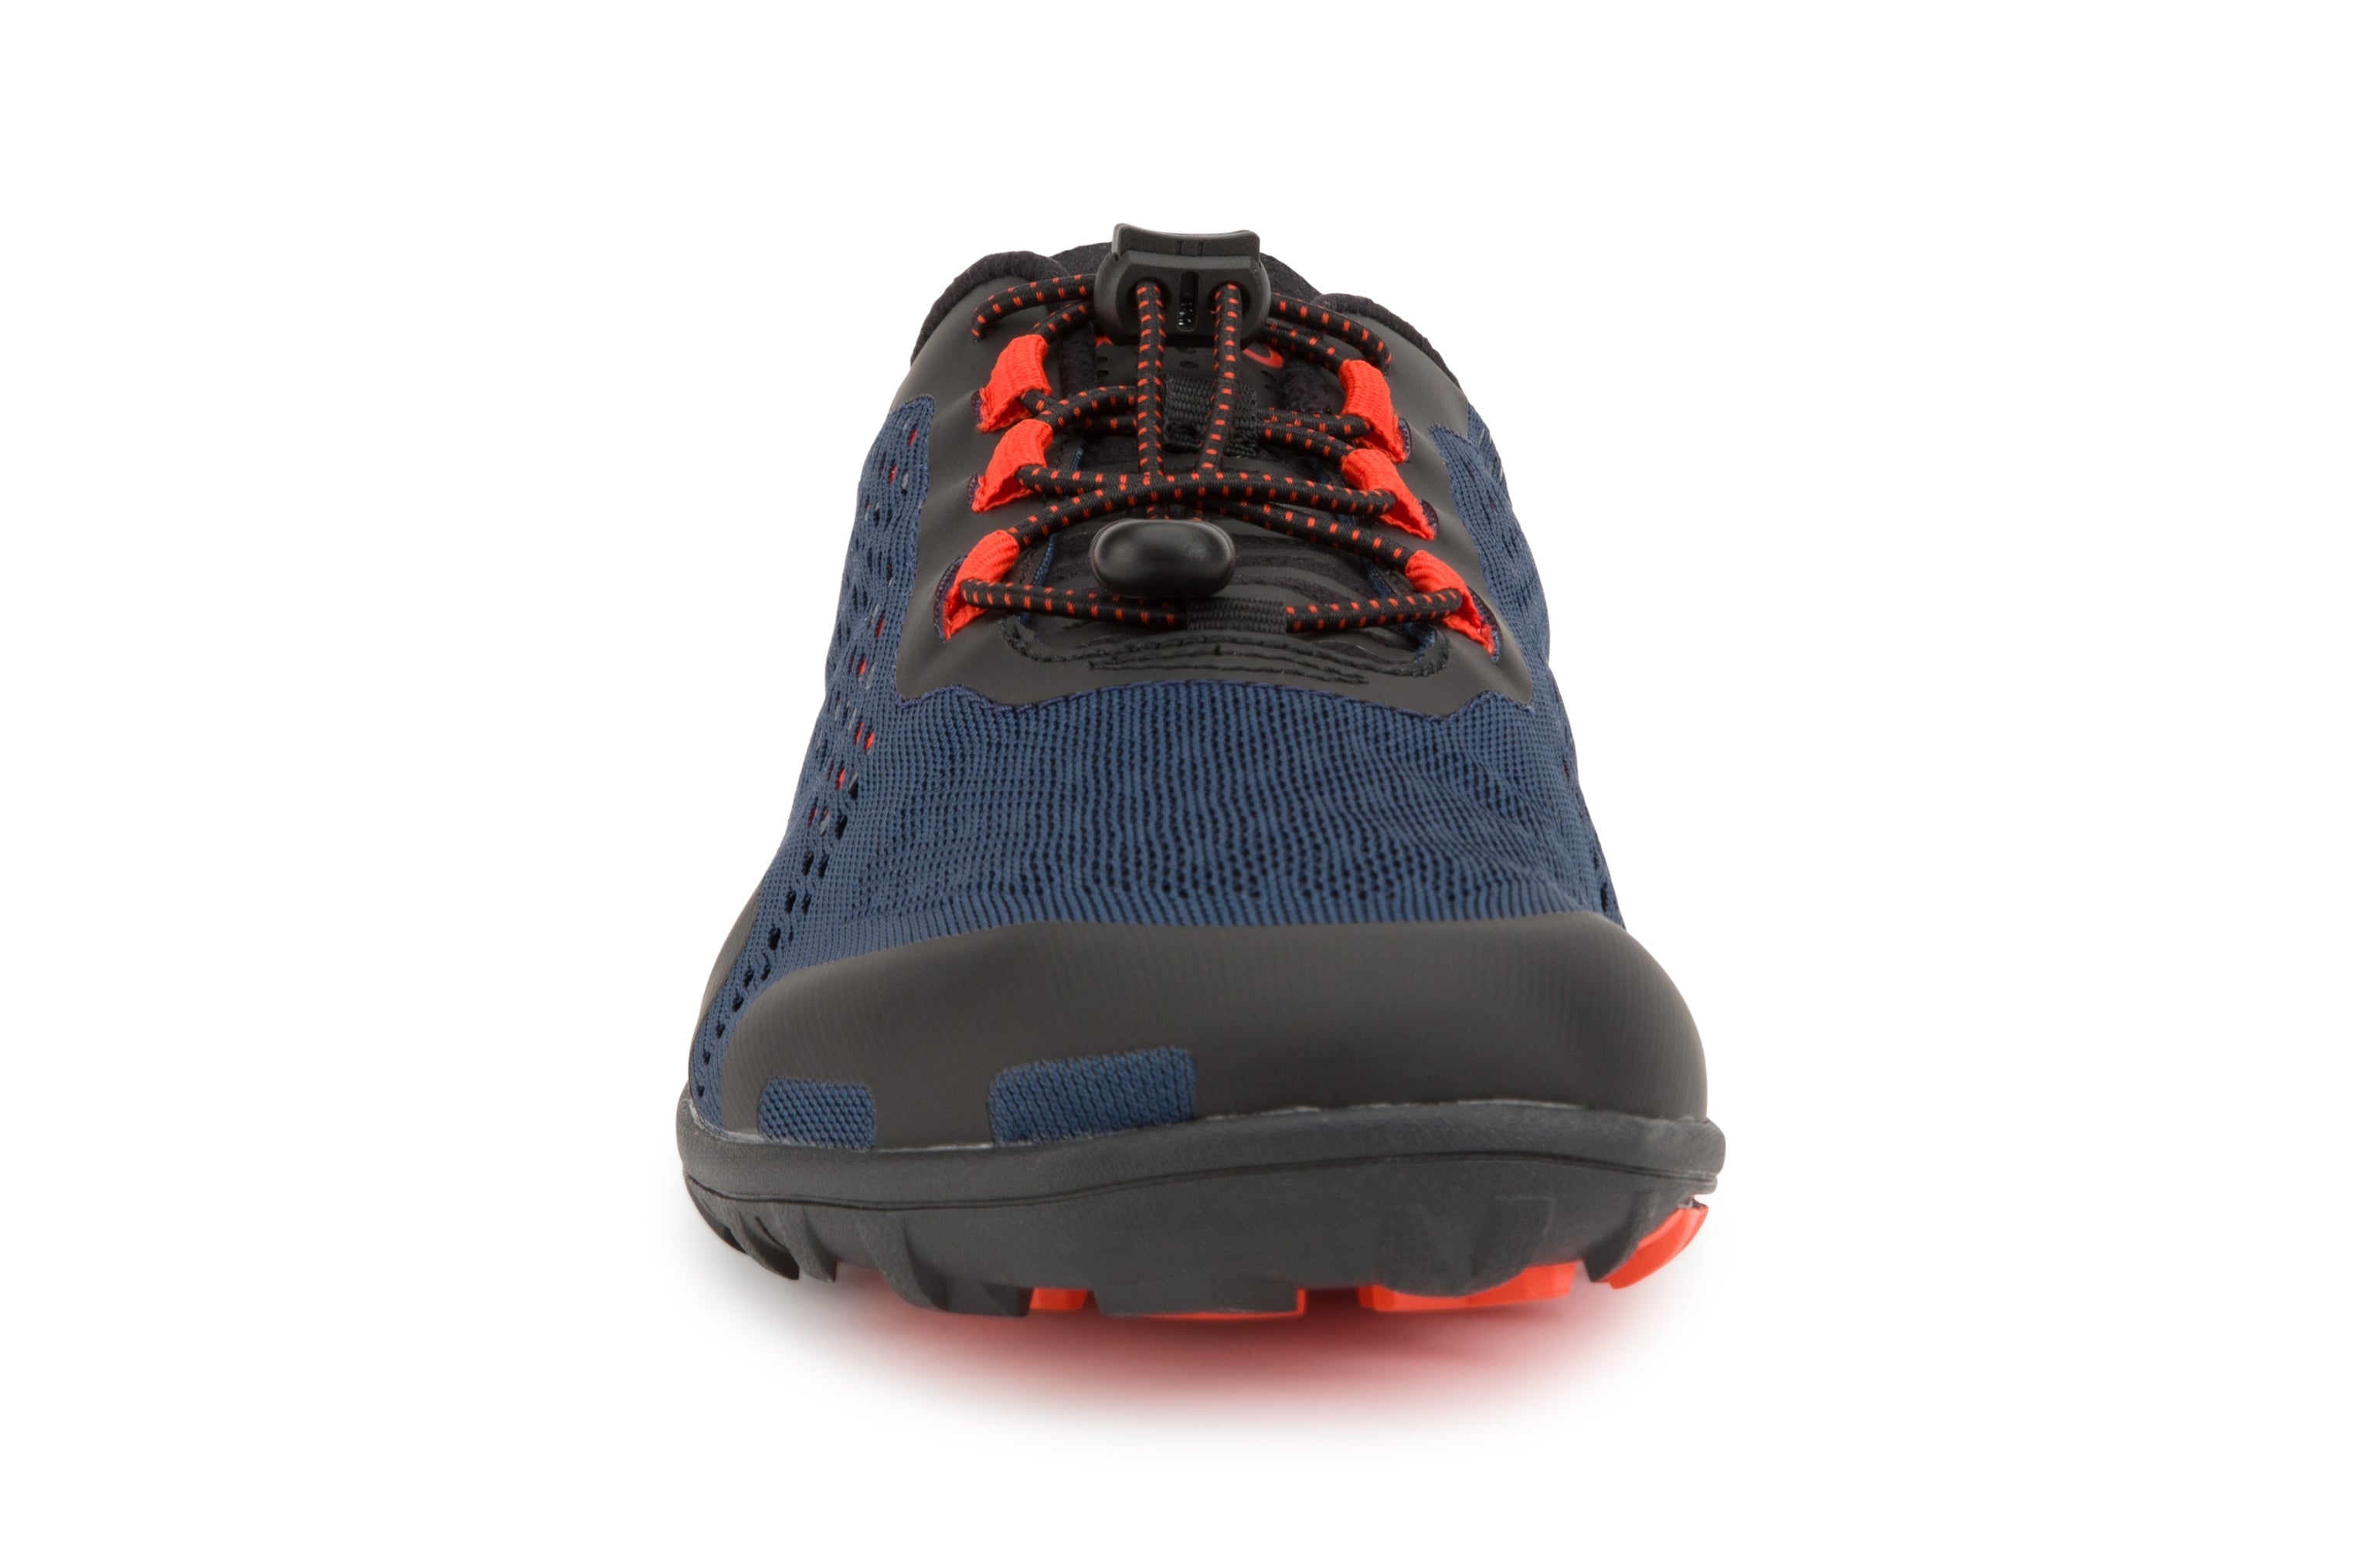 Xero Shoes Aqua X Sport barfods vand træningssko til mænd i farven moonlit blue, forfra